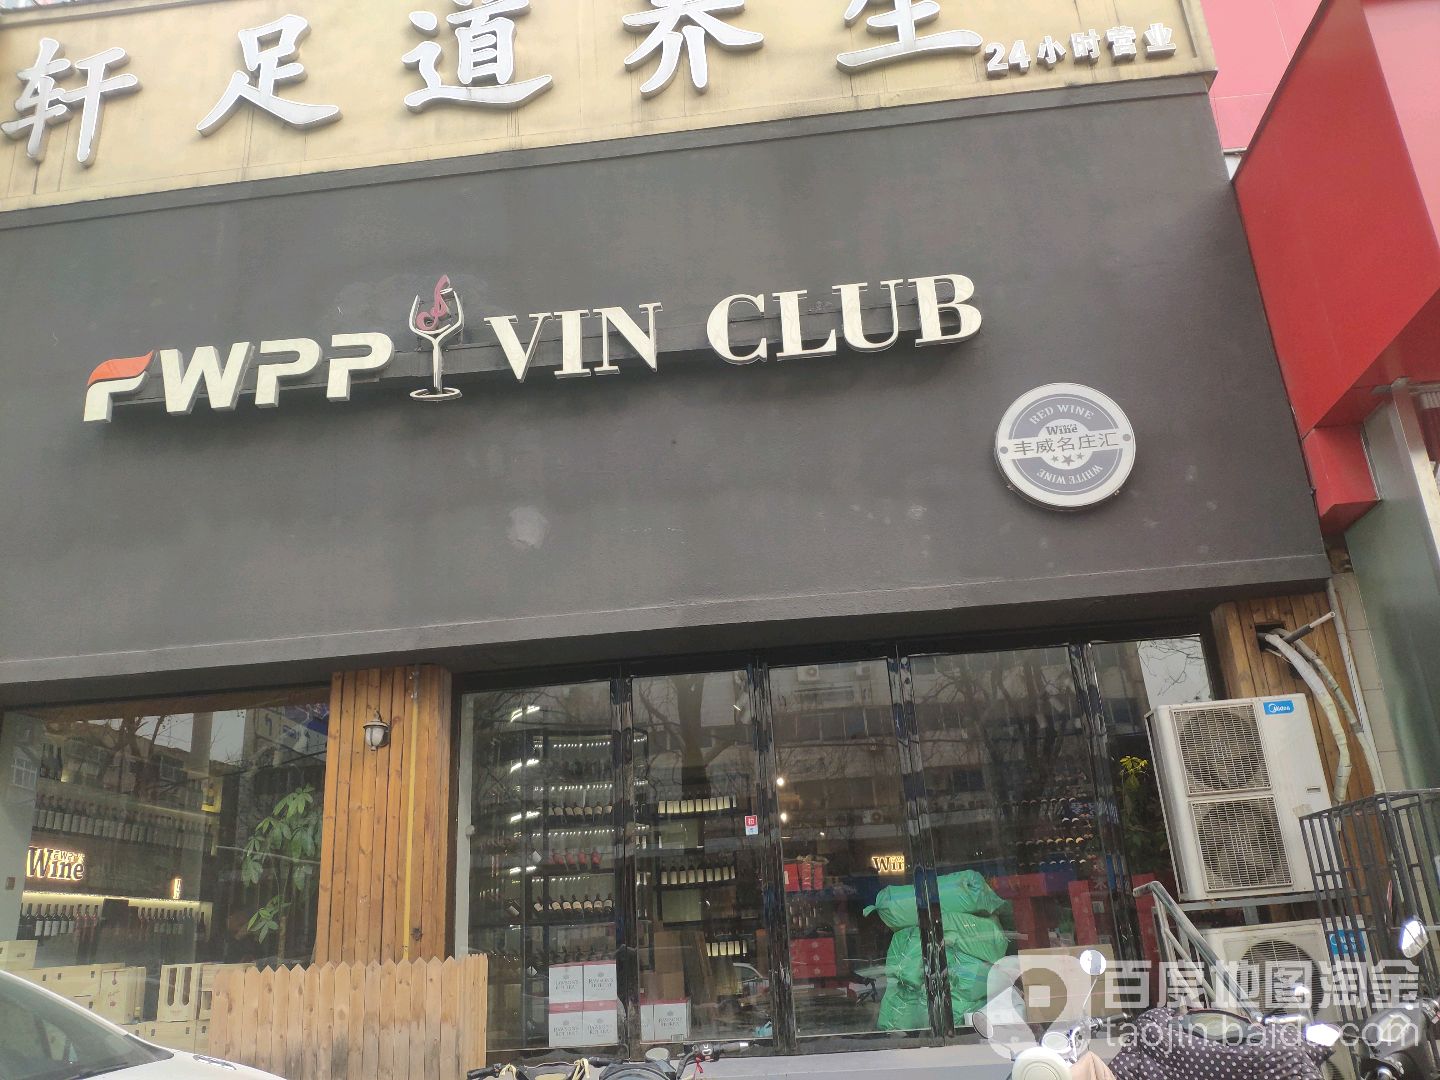 WPP VIN CLUB